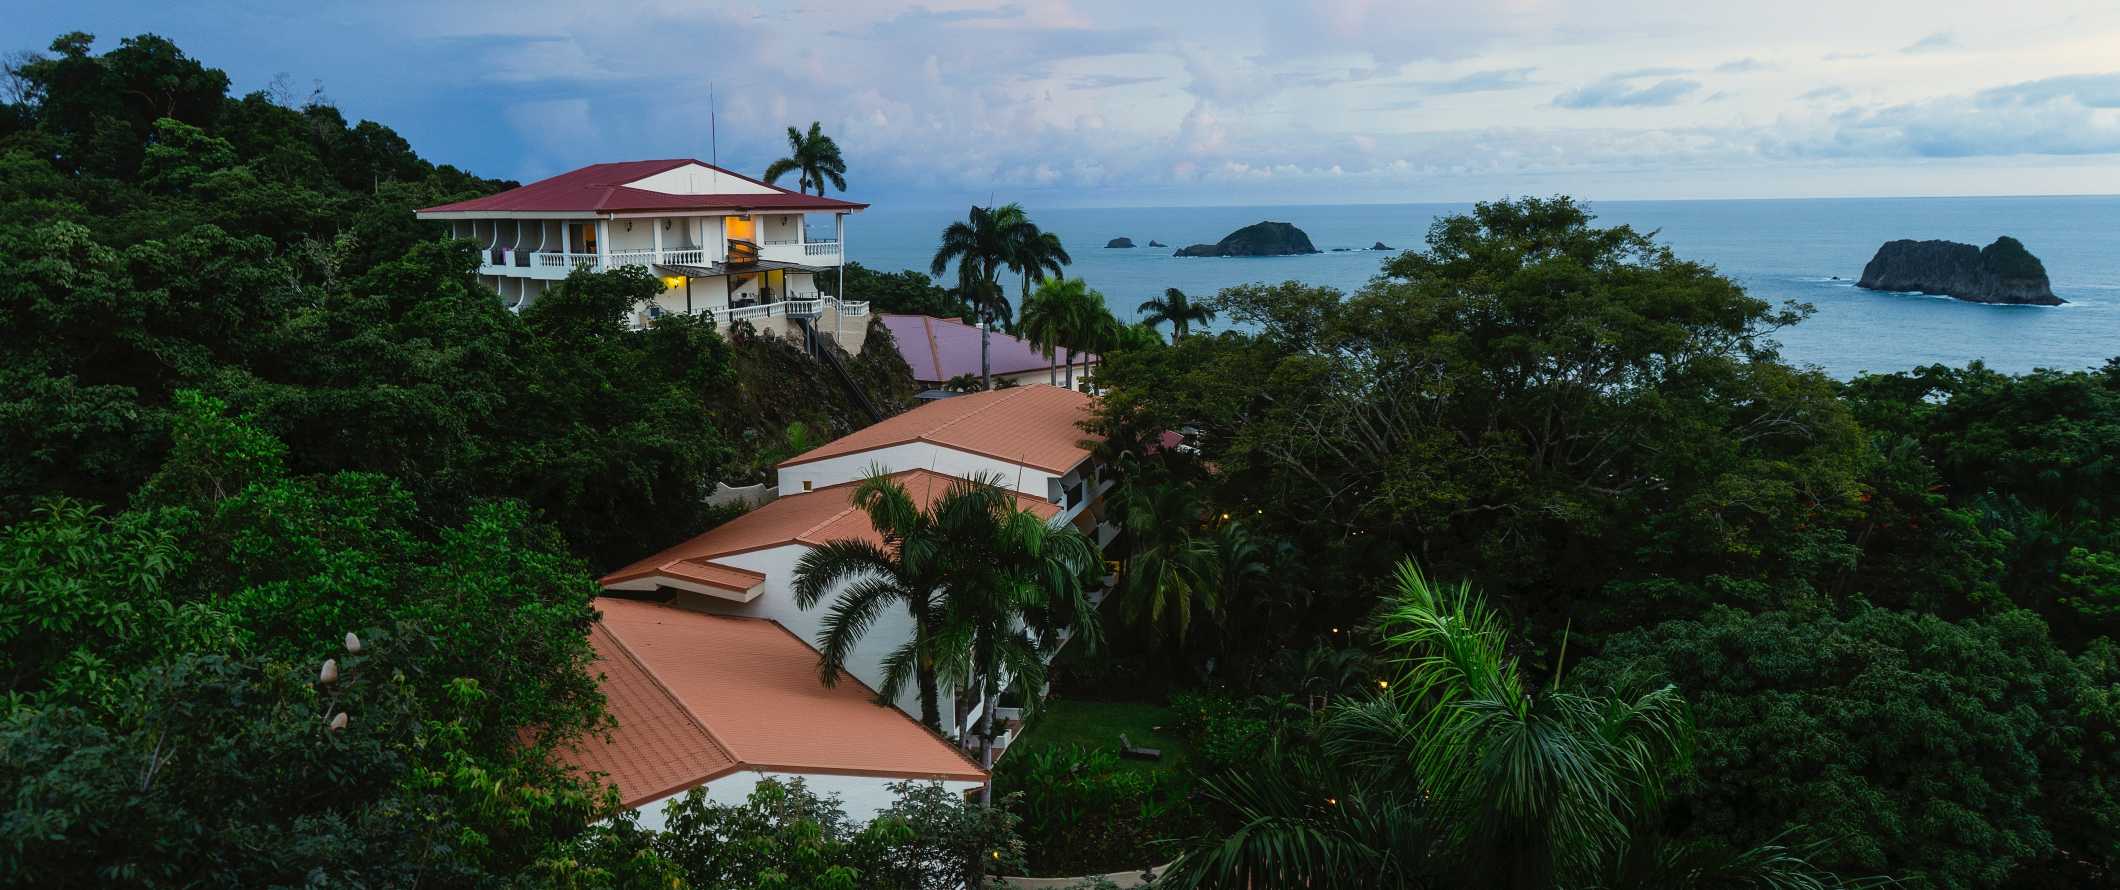 哥斯达黎加曼努埃尔安东尼奥的小度假村和酒店建筑坐落在热带雨林中，背景是海洋